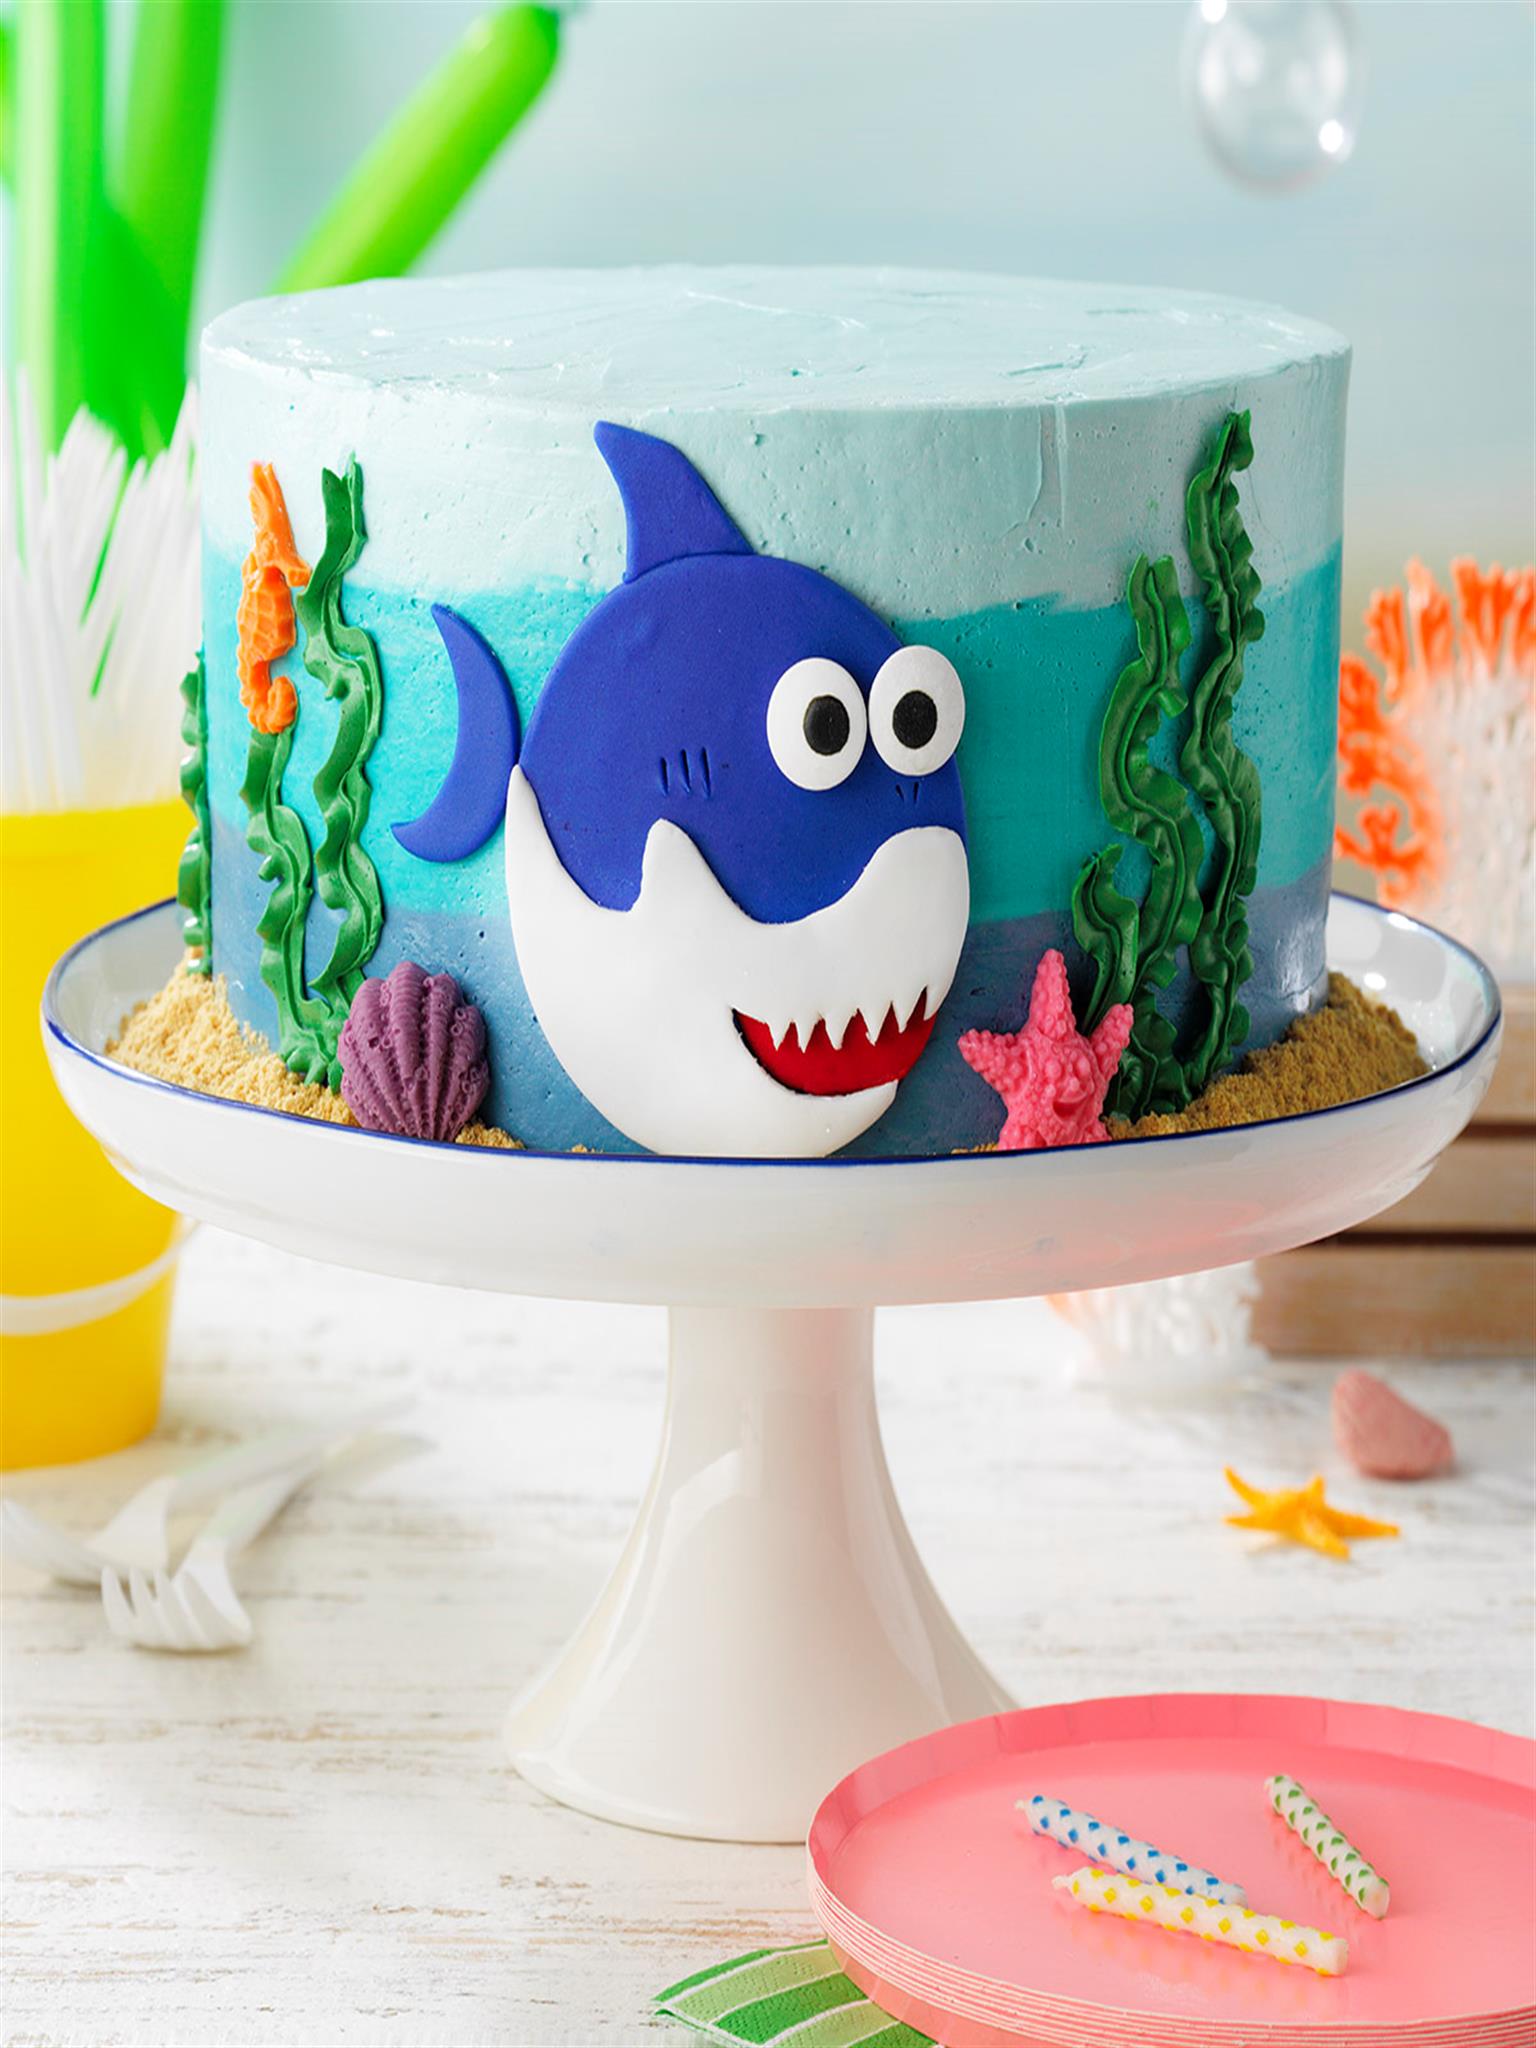 Baby Shark Cake Recipe How To Make It